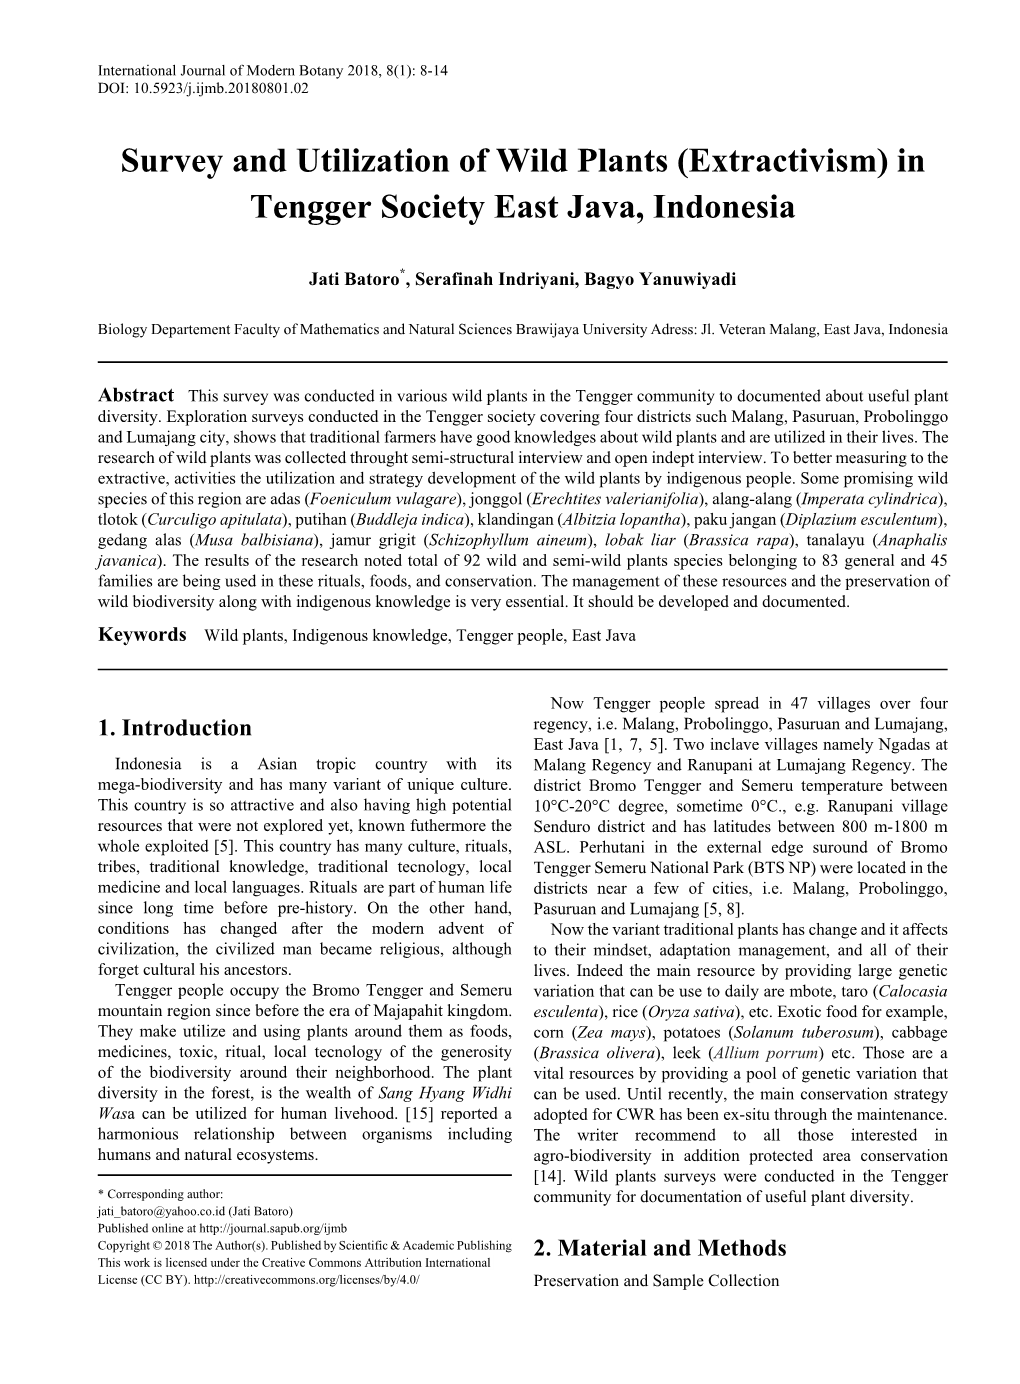 Wild Plants, Indigenous Knowledge, Tengger People, East Java